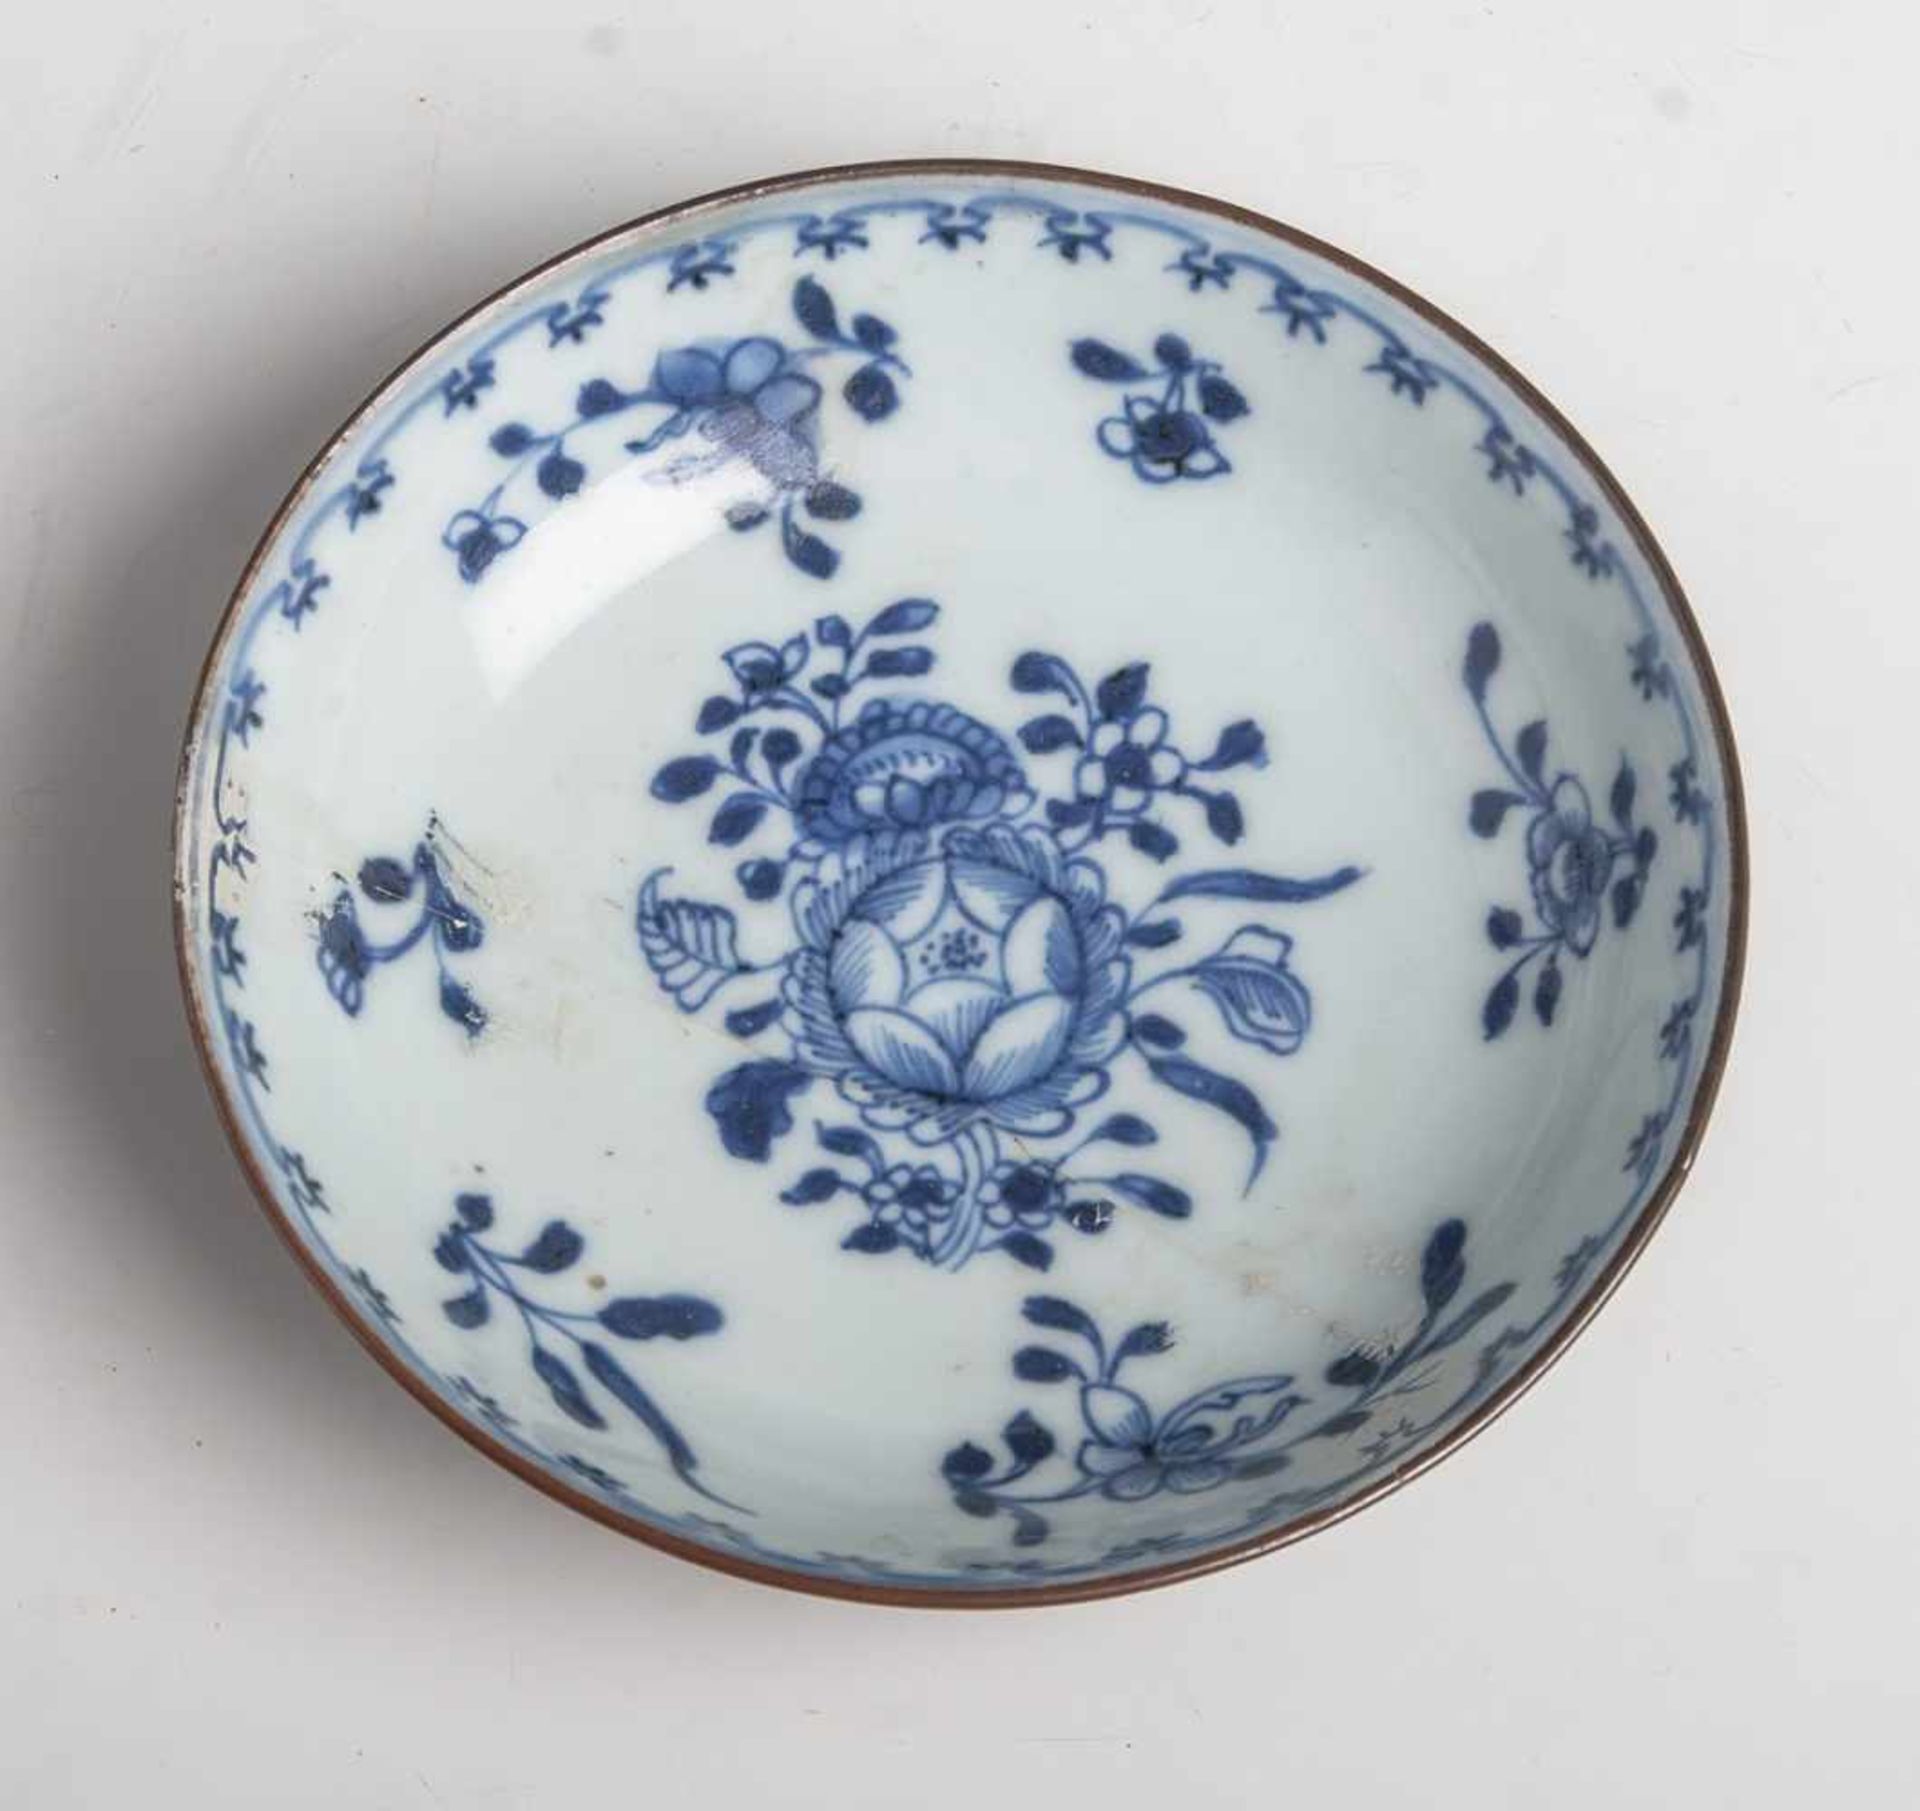 Porzellanteller (China, wohl 18. Jahrhundert), Teller m. hohem Rand u. blauem Blumendekor,Außenseite